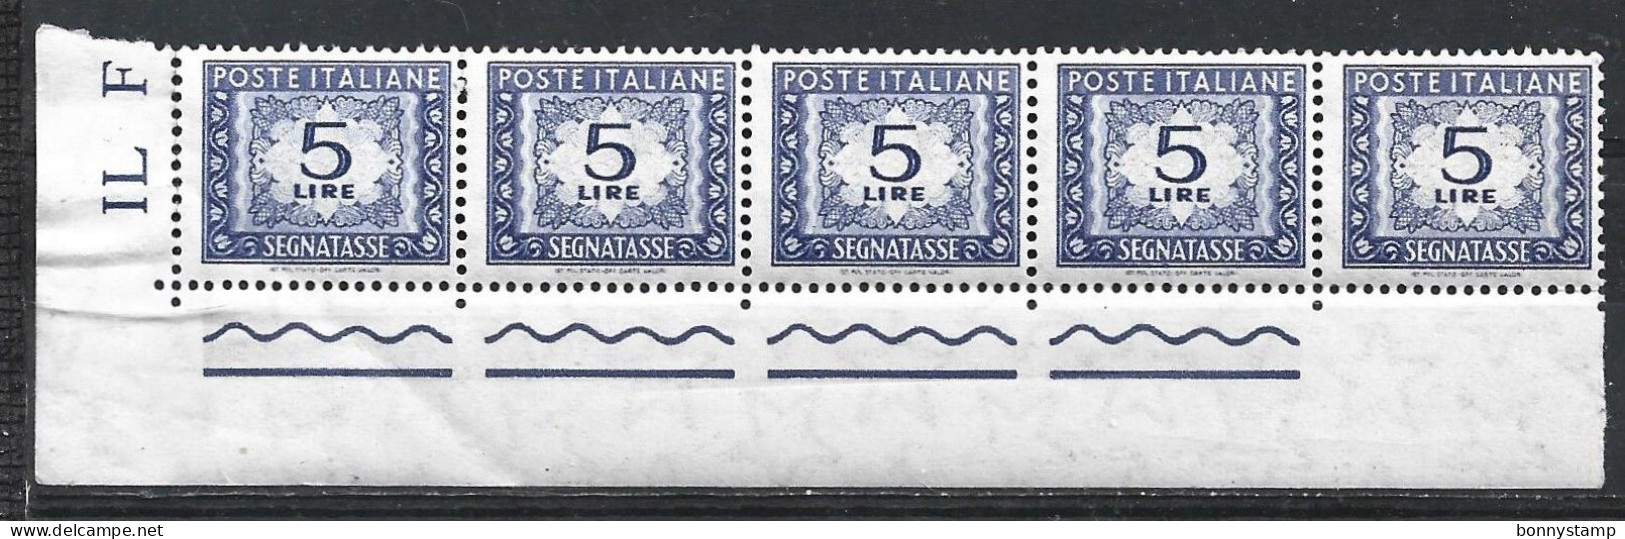 Repubblica Italiana, 1955/66 - 5 Lire Segnatasse, Fil. Stelle, Blocco Di 5 - Nr.111 MNH** - Impuestos